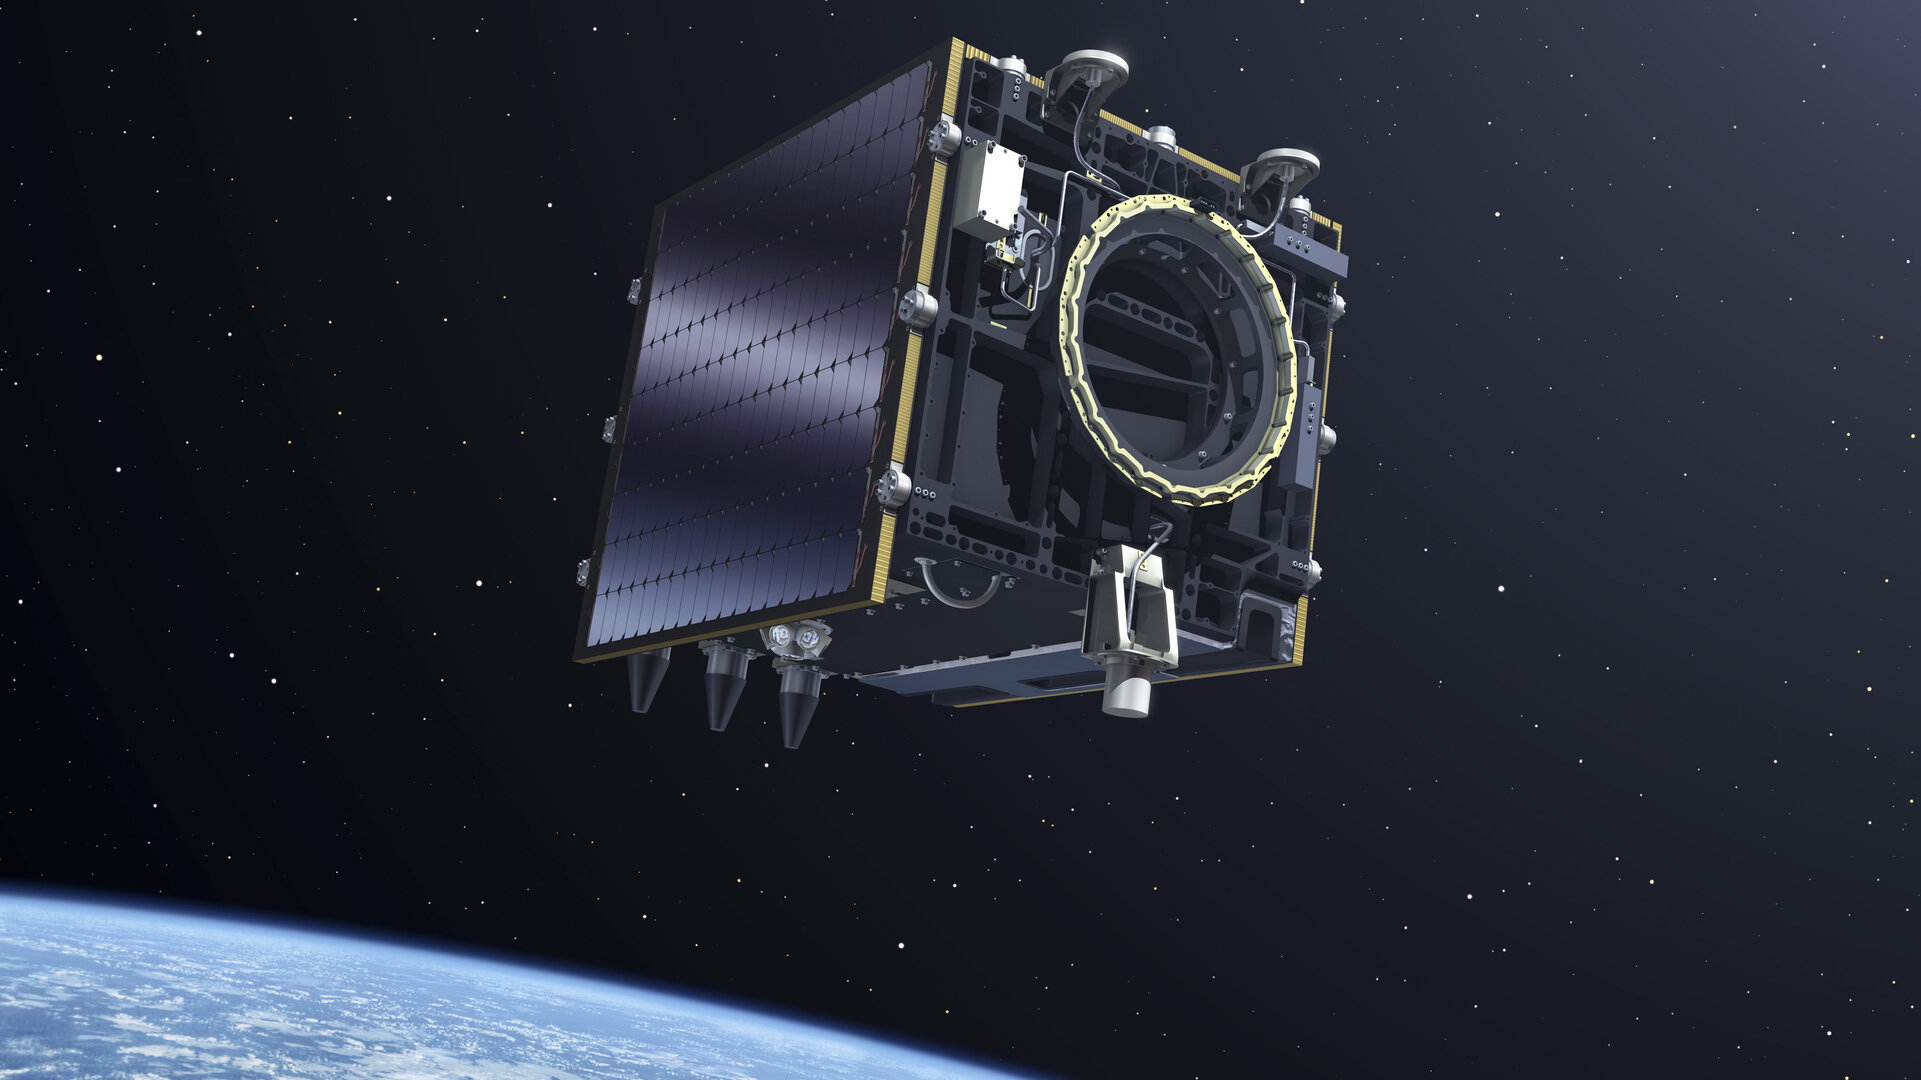  Artistic view of the Proba-V satellite